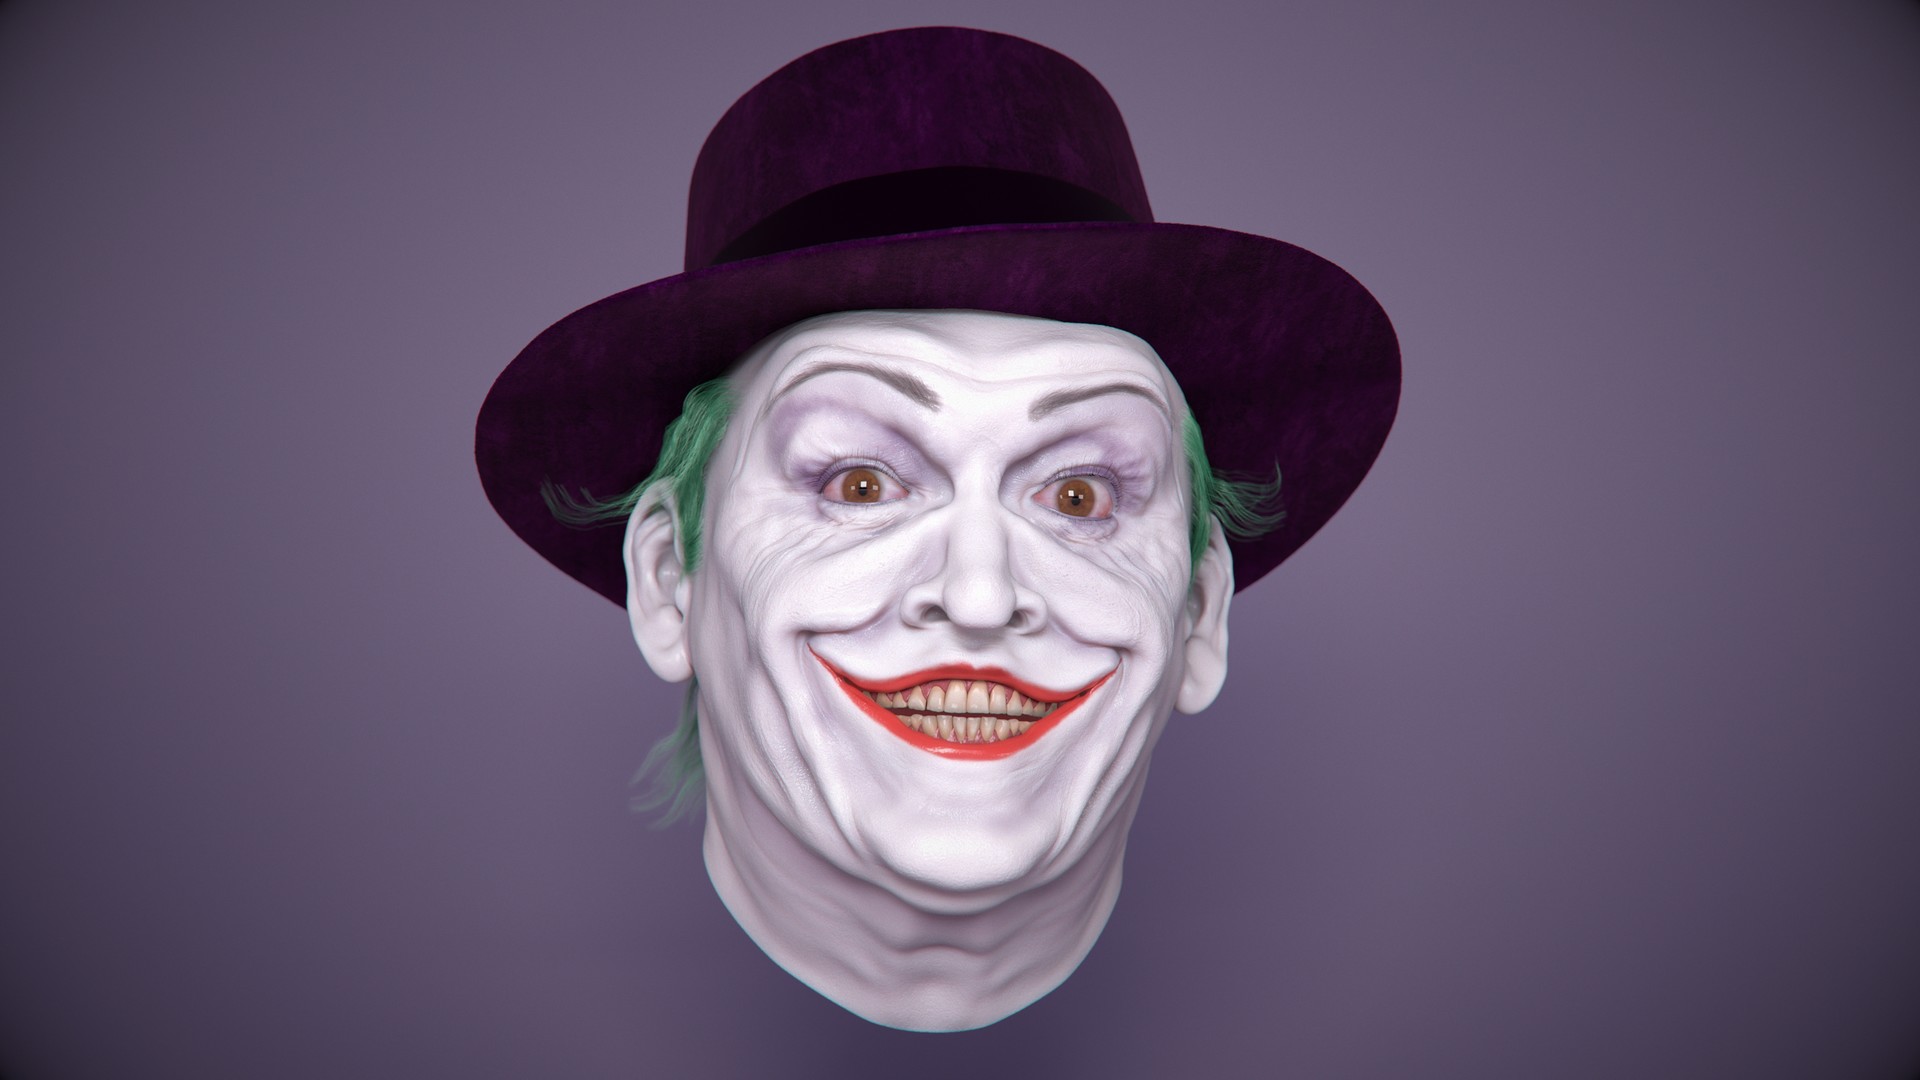 Artstation - Jack The Joker